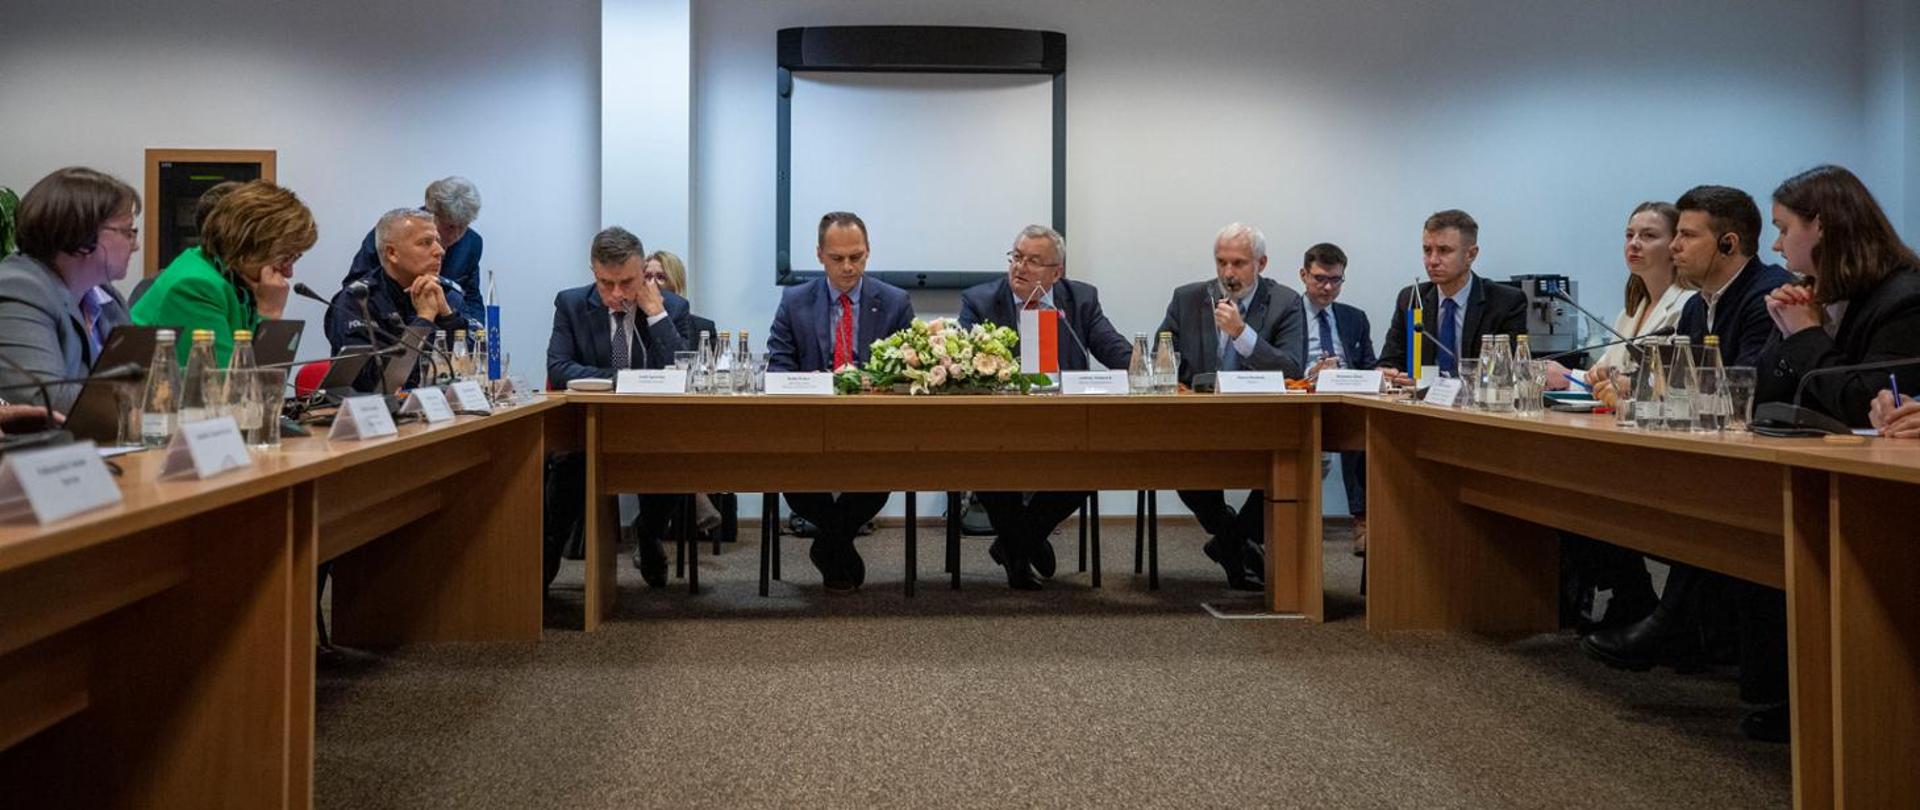 Spotkanie przedstawicieli rządów Polski i Ukrainy oraz Komisji Europejskiej na przejściu granicznym w Dorohusku.